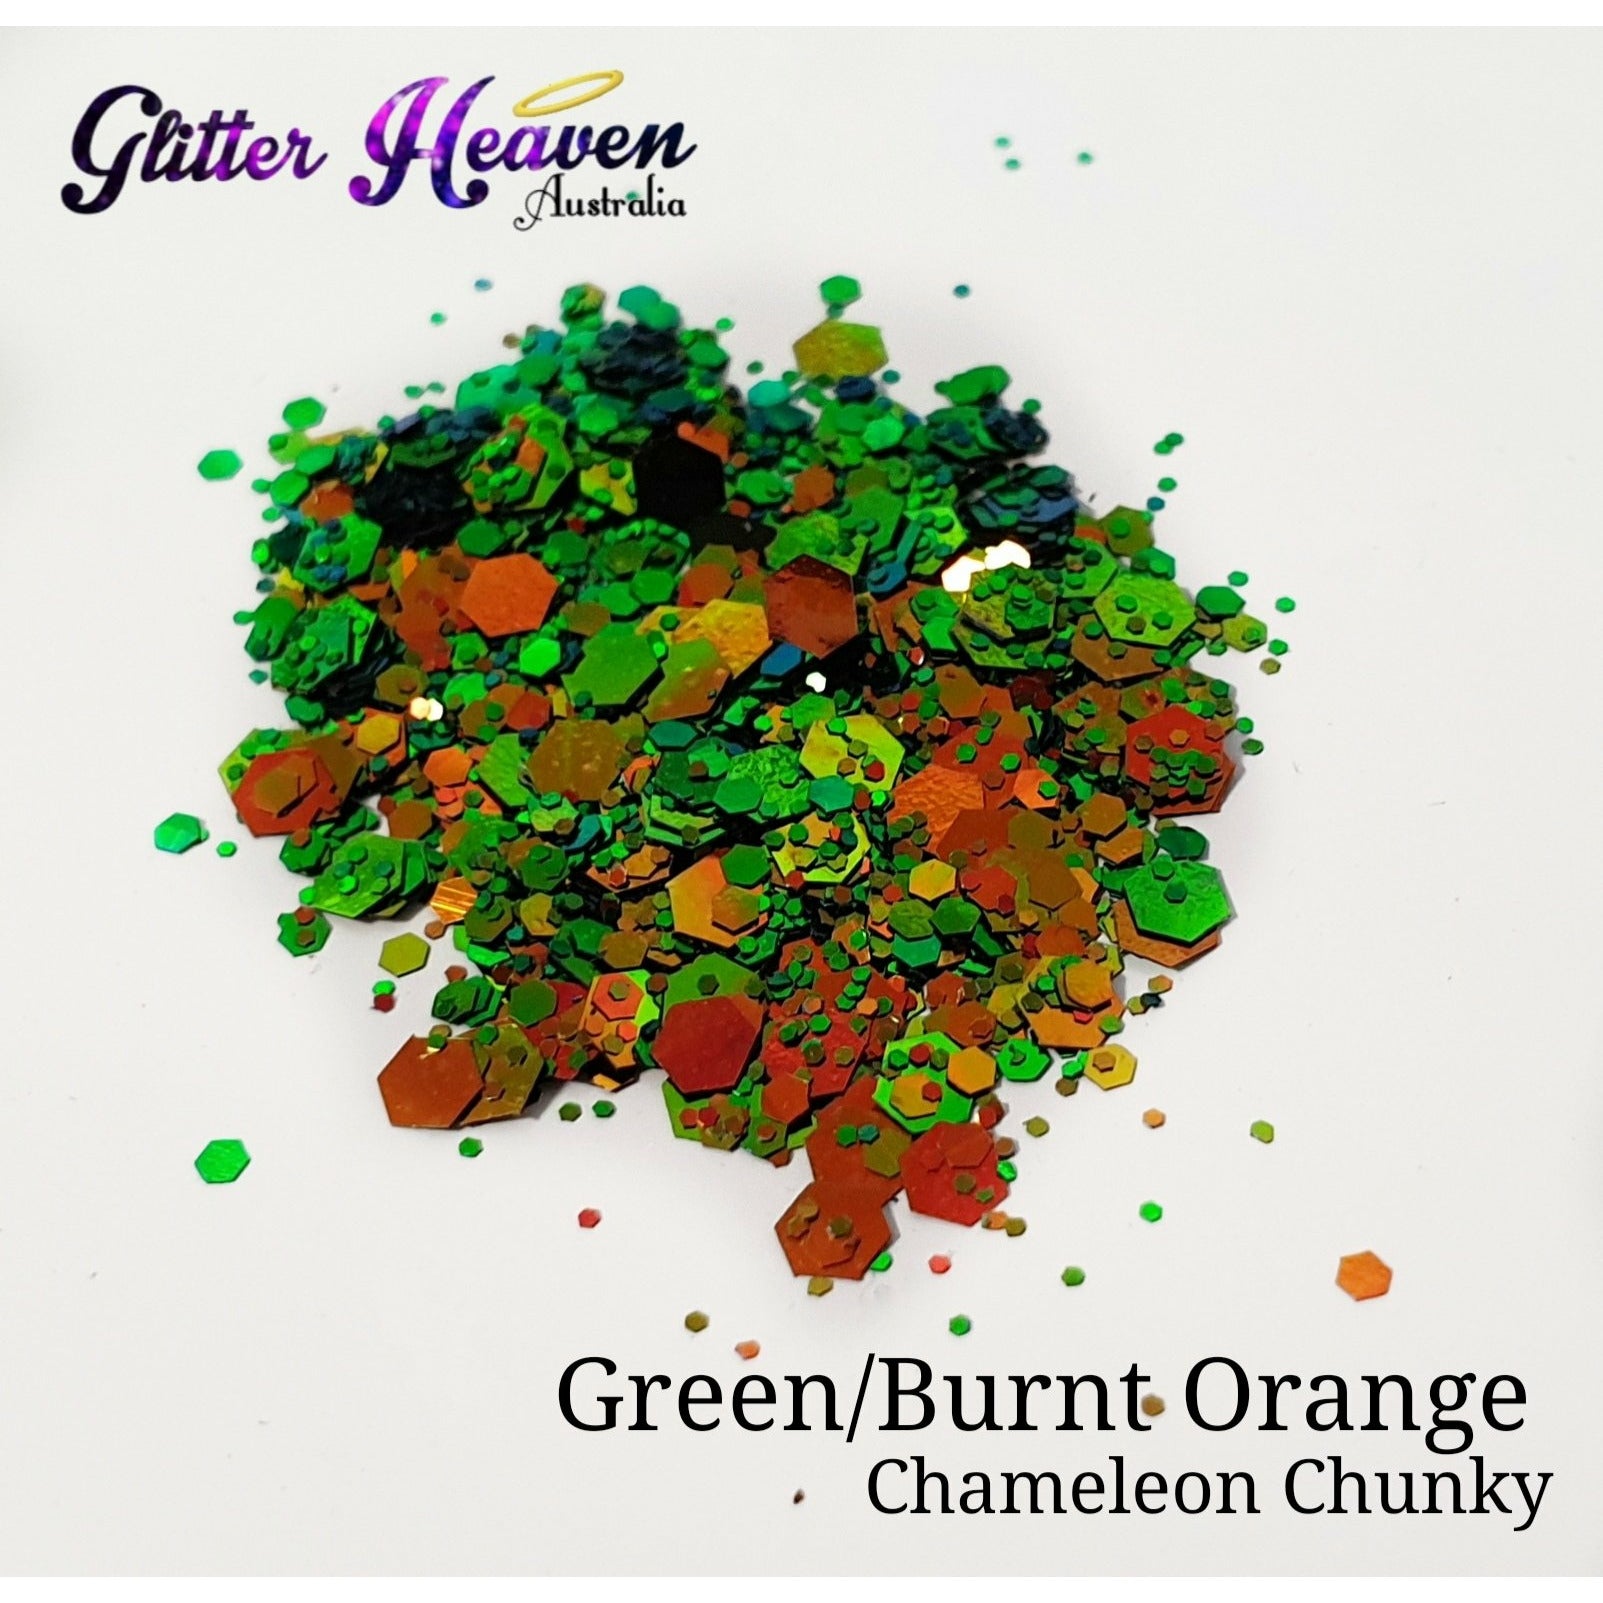 Green/Burnt Orange Chameleon Chunky